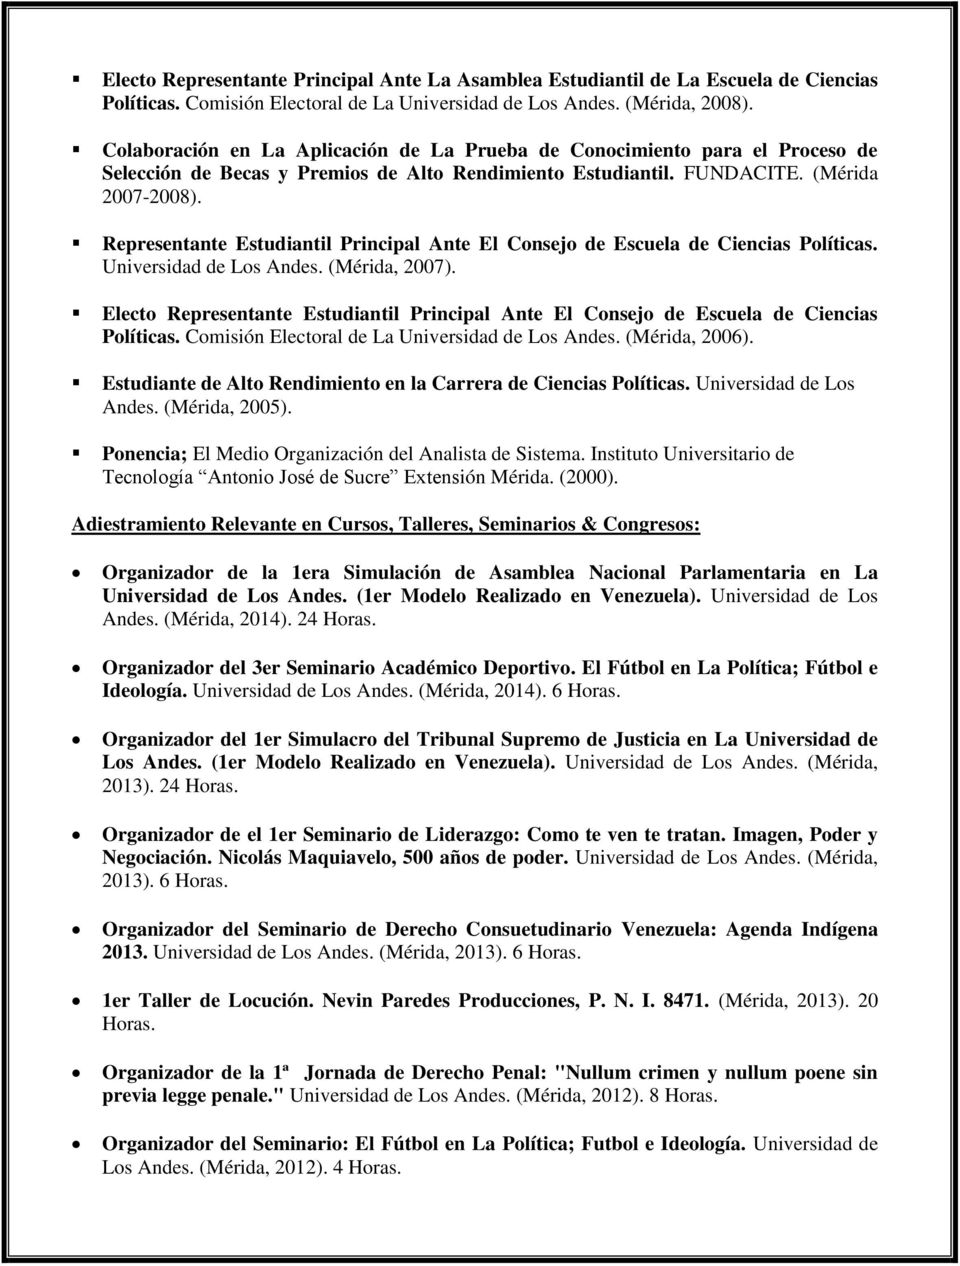 Representante Estudiantil Principal Ante El Consejo de Escuela de Ciencias Políticas. Universidad de Los Andes. (Mérida, 2007).